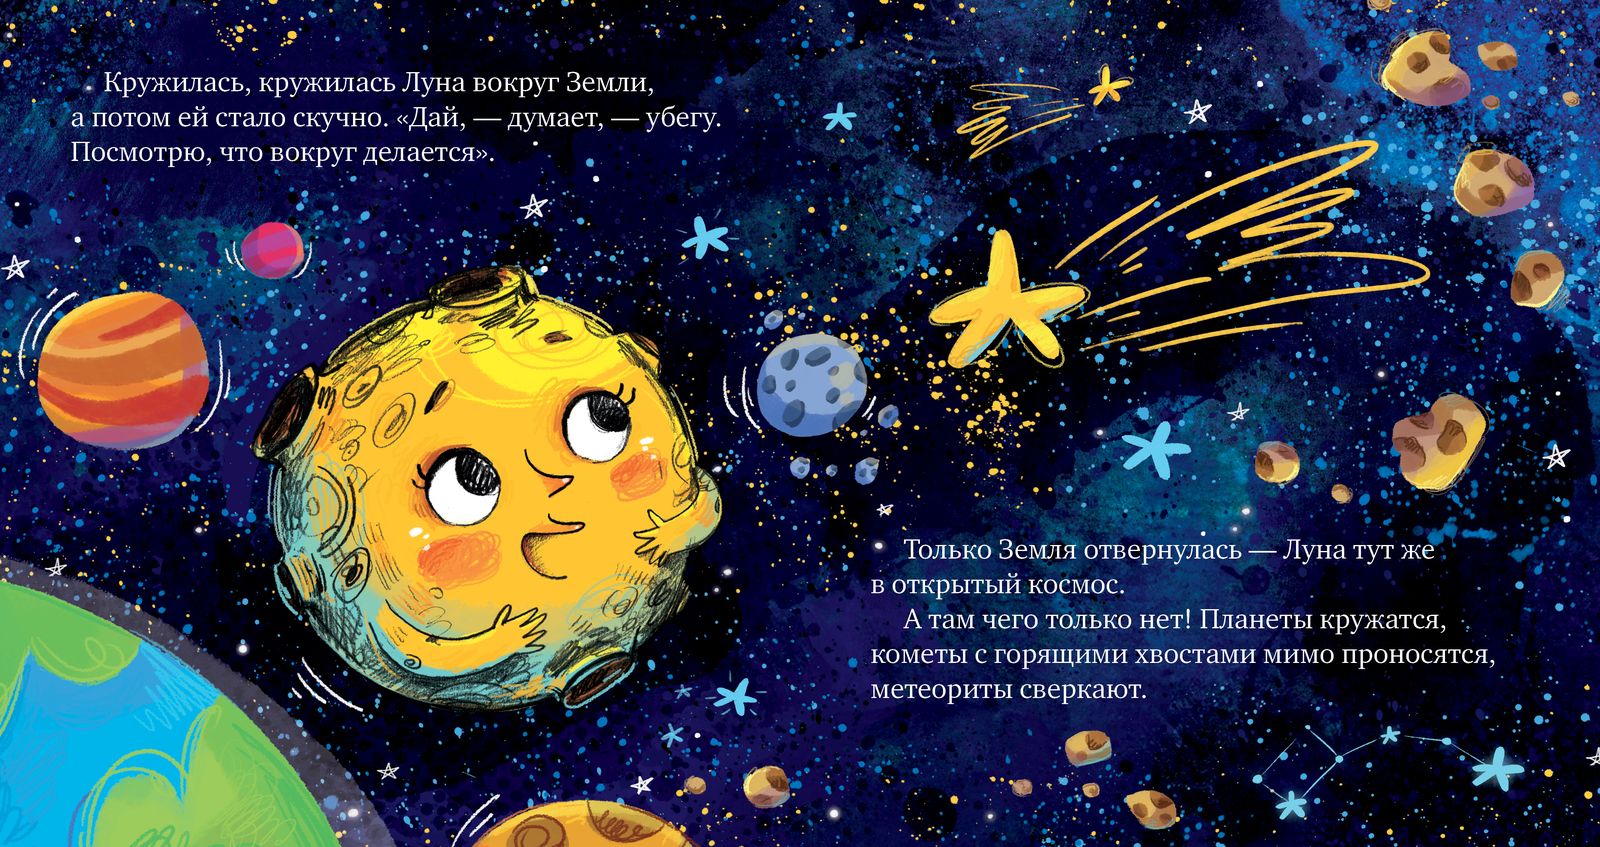 Книги для детей о космосе и космонавтах – афиша